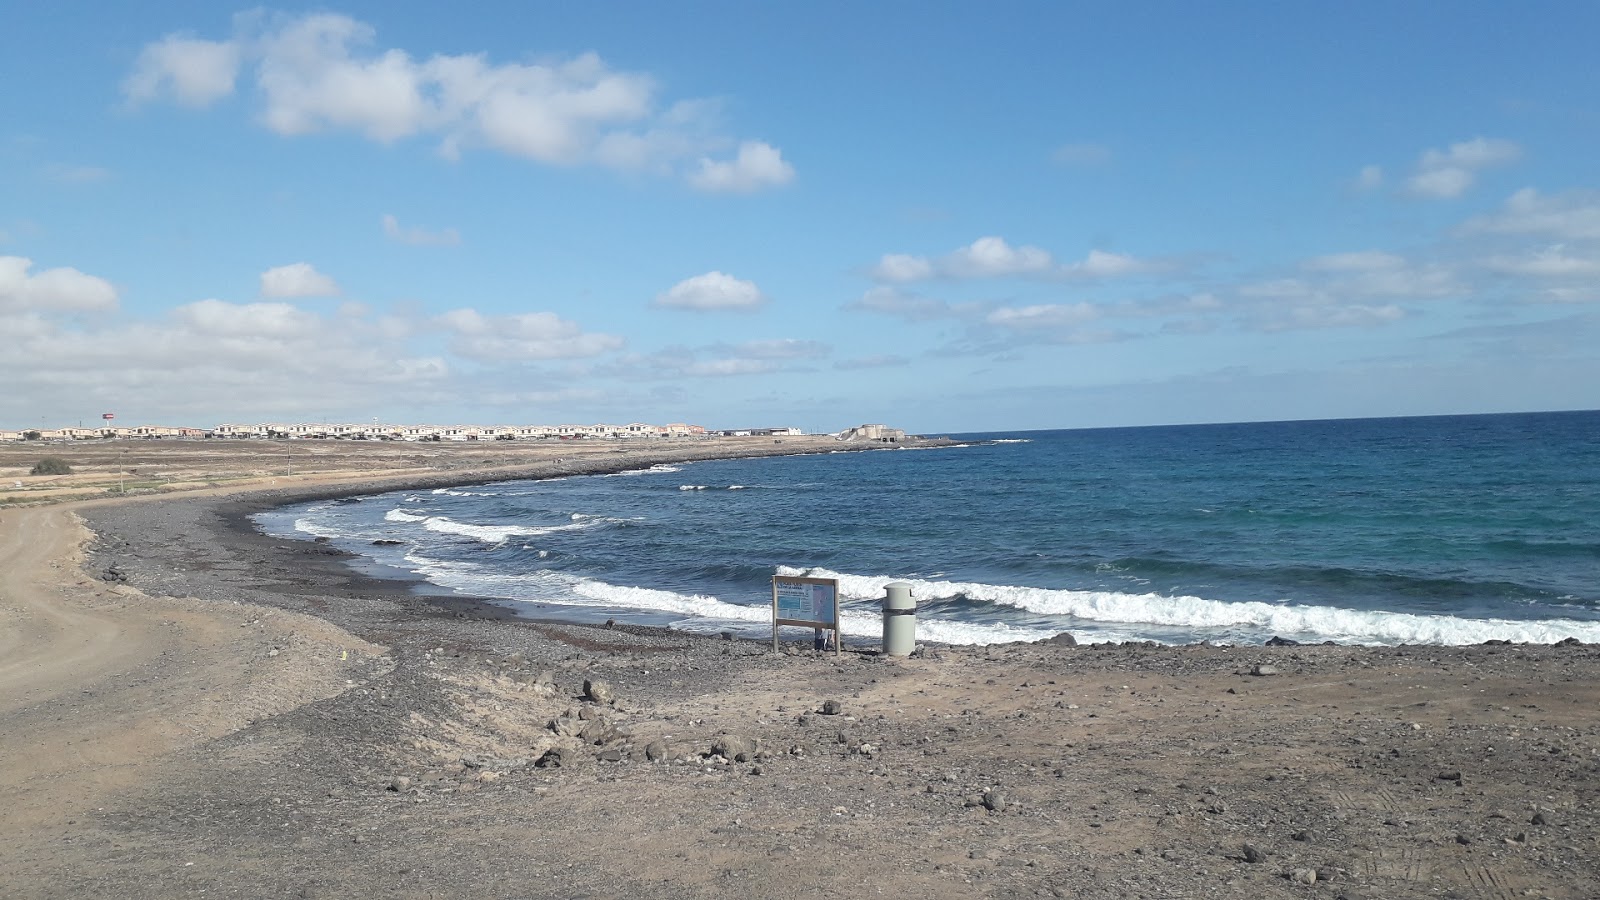 Playa para perros'in fotoğrafı gri kum ve çakıl yüzey ile